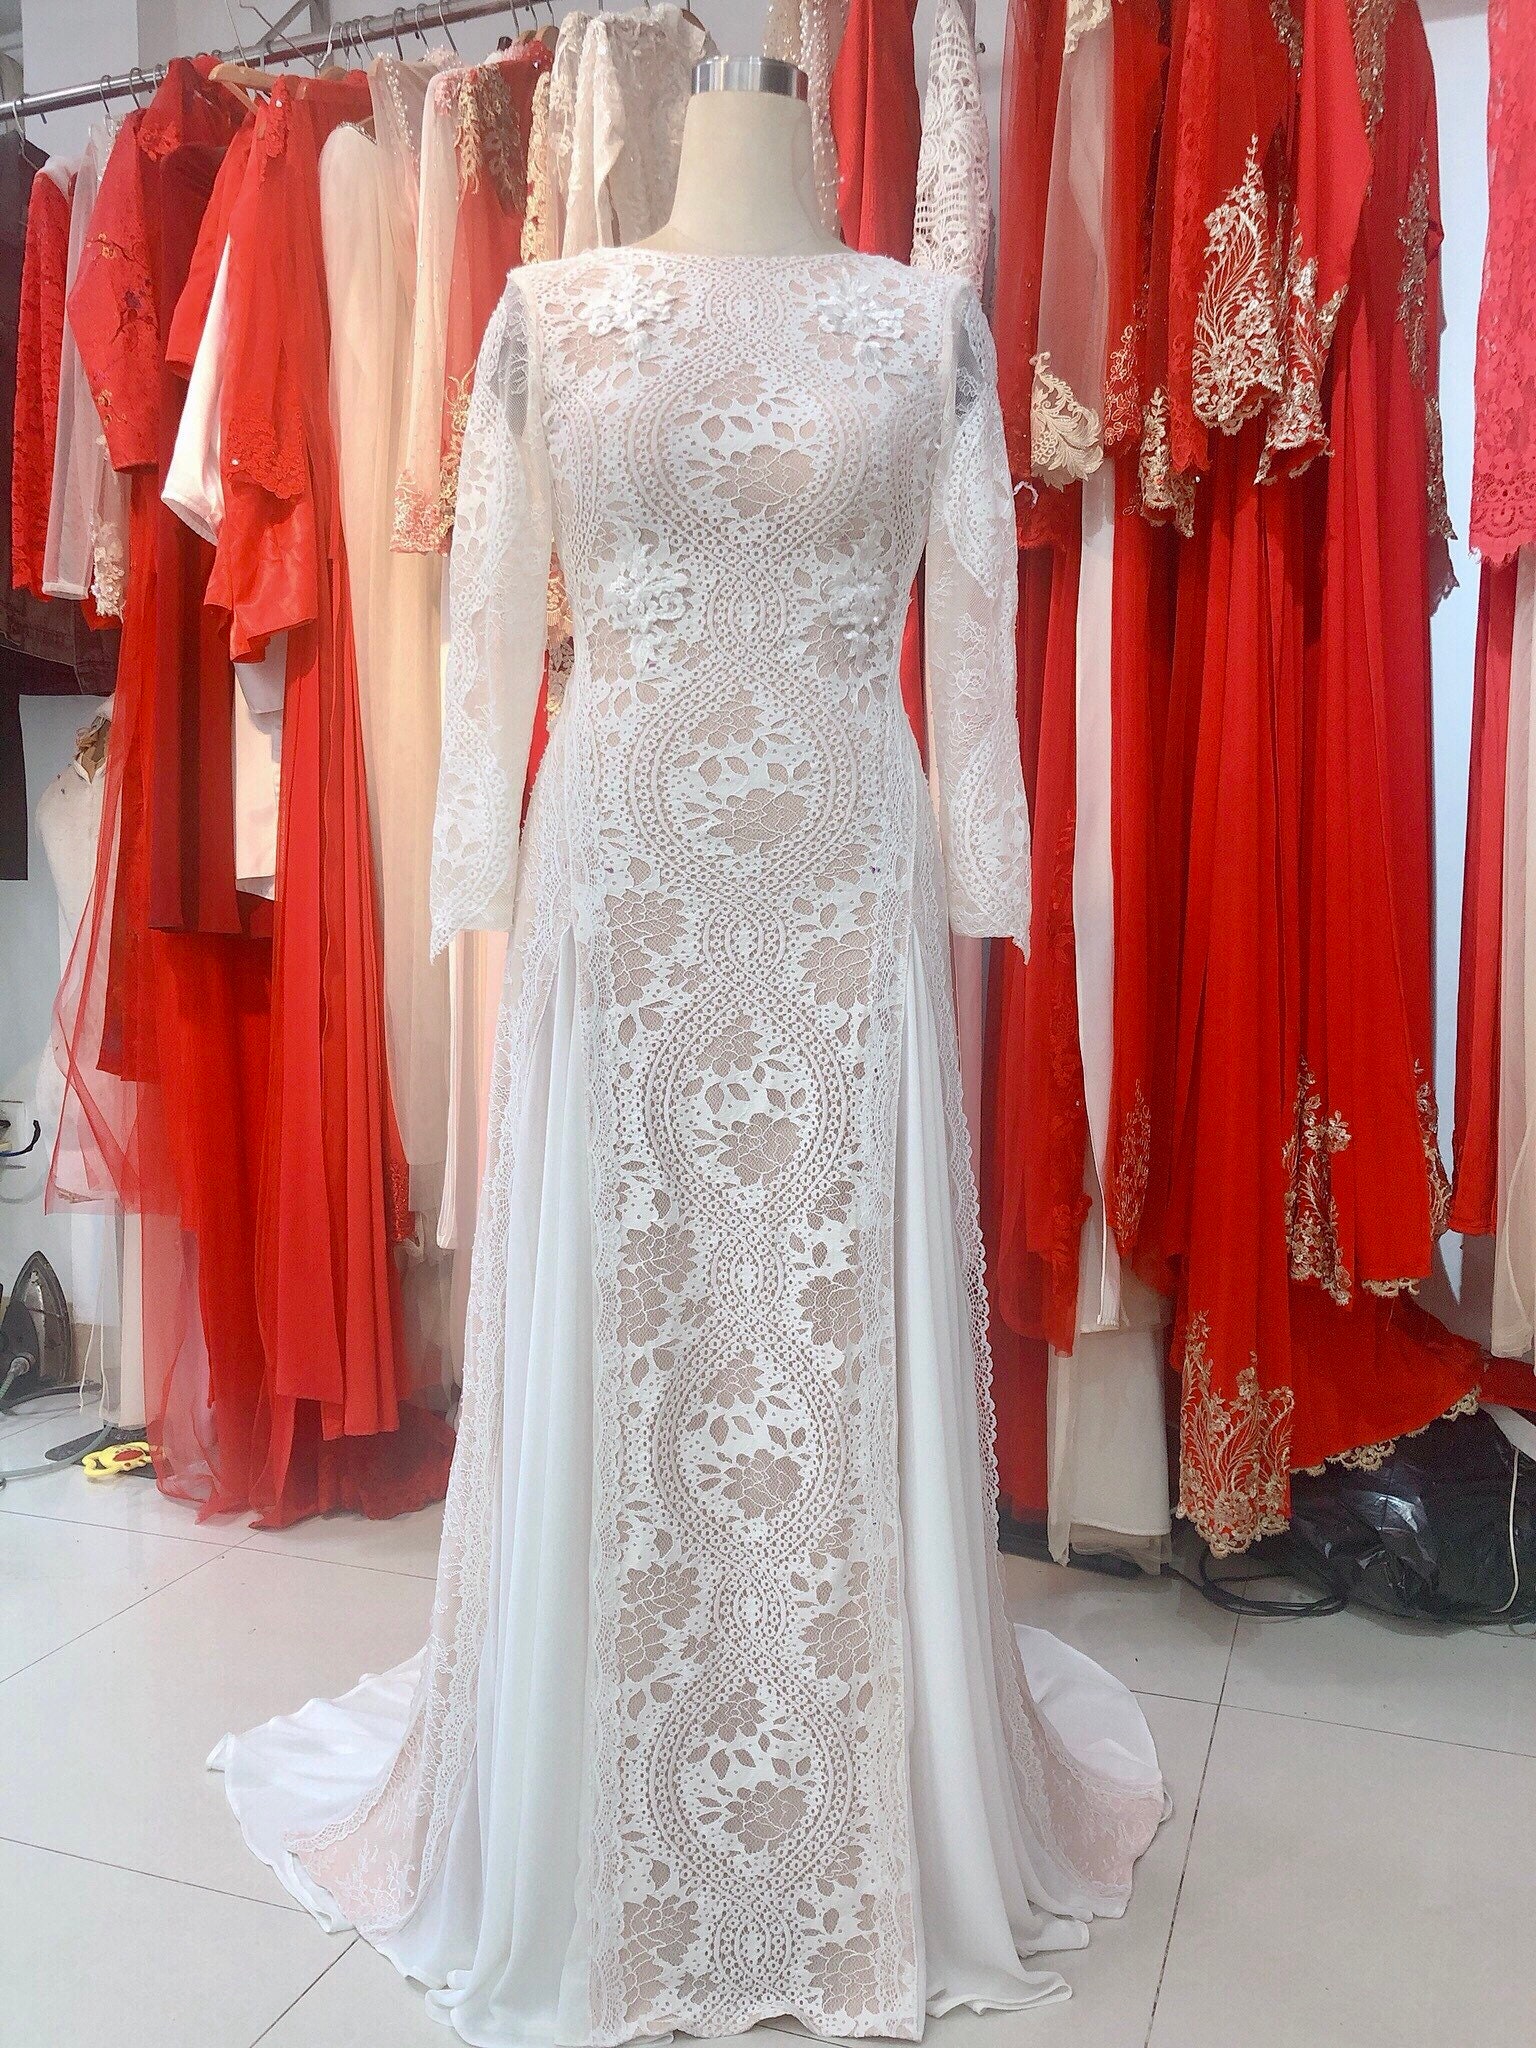 Gorgeous Vintage Boho Ivory Lace Wedding Dress Made to Order | Etsy